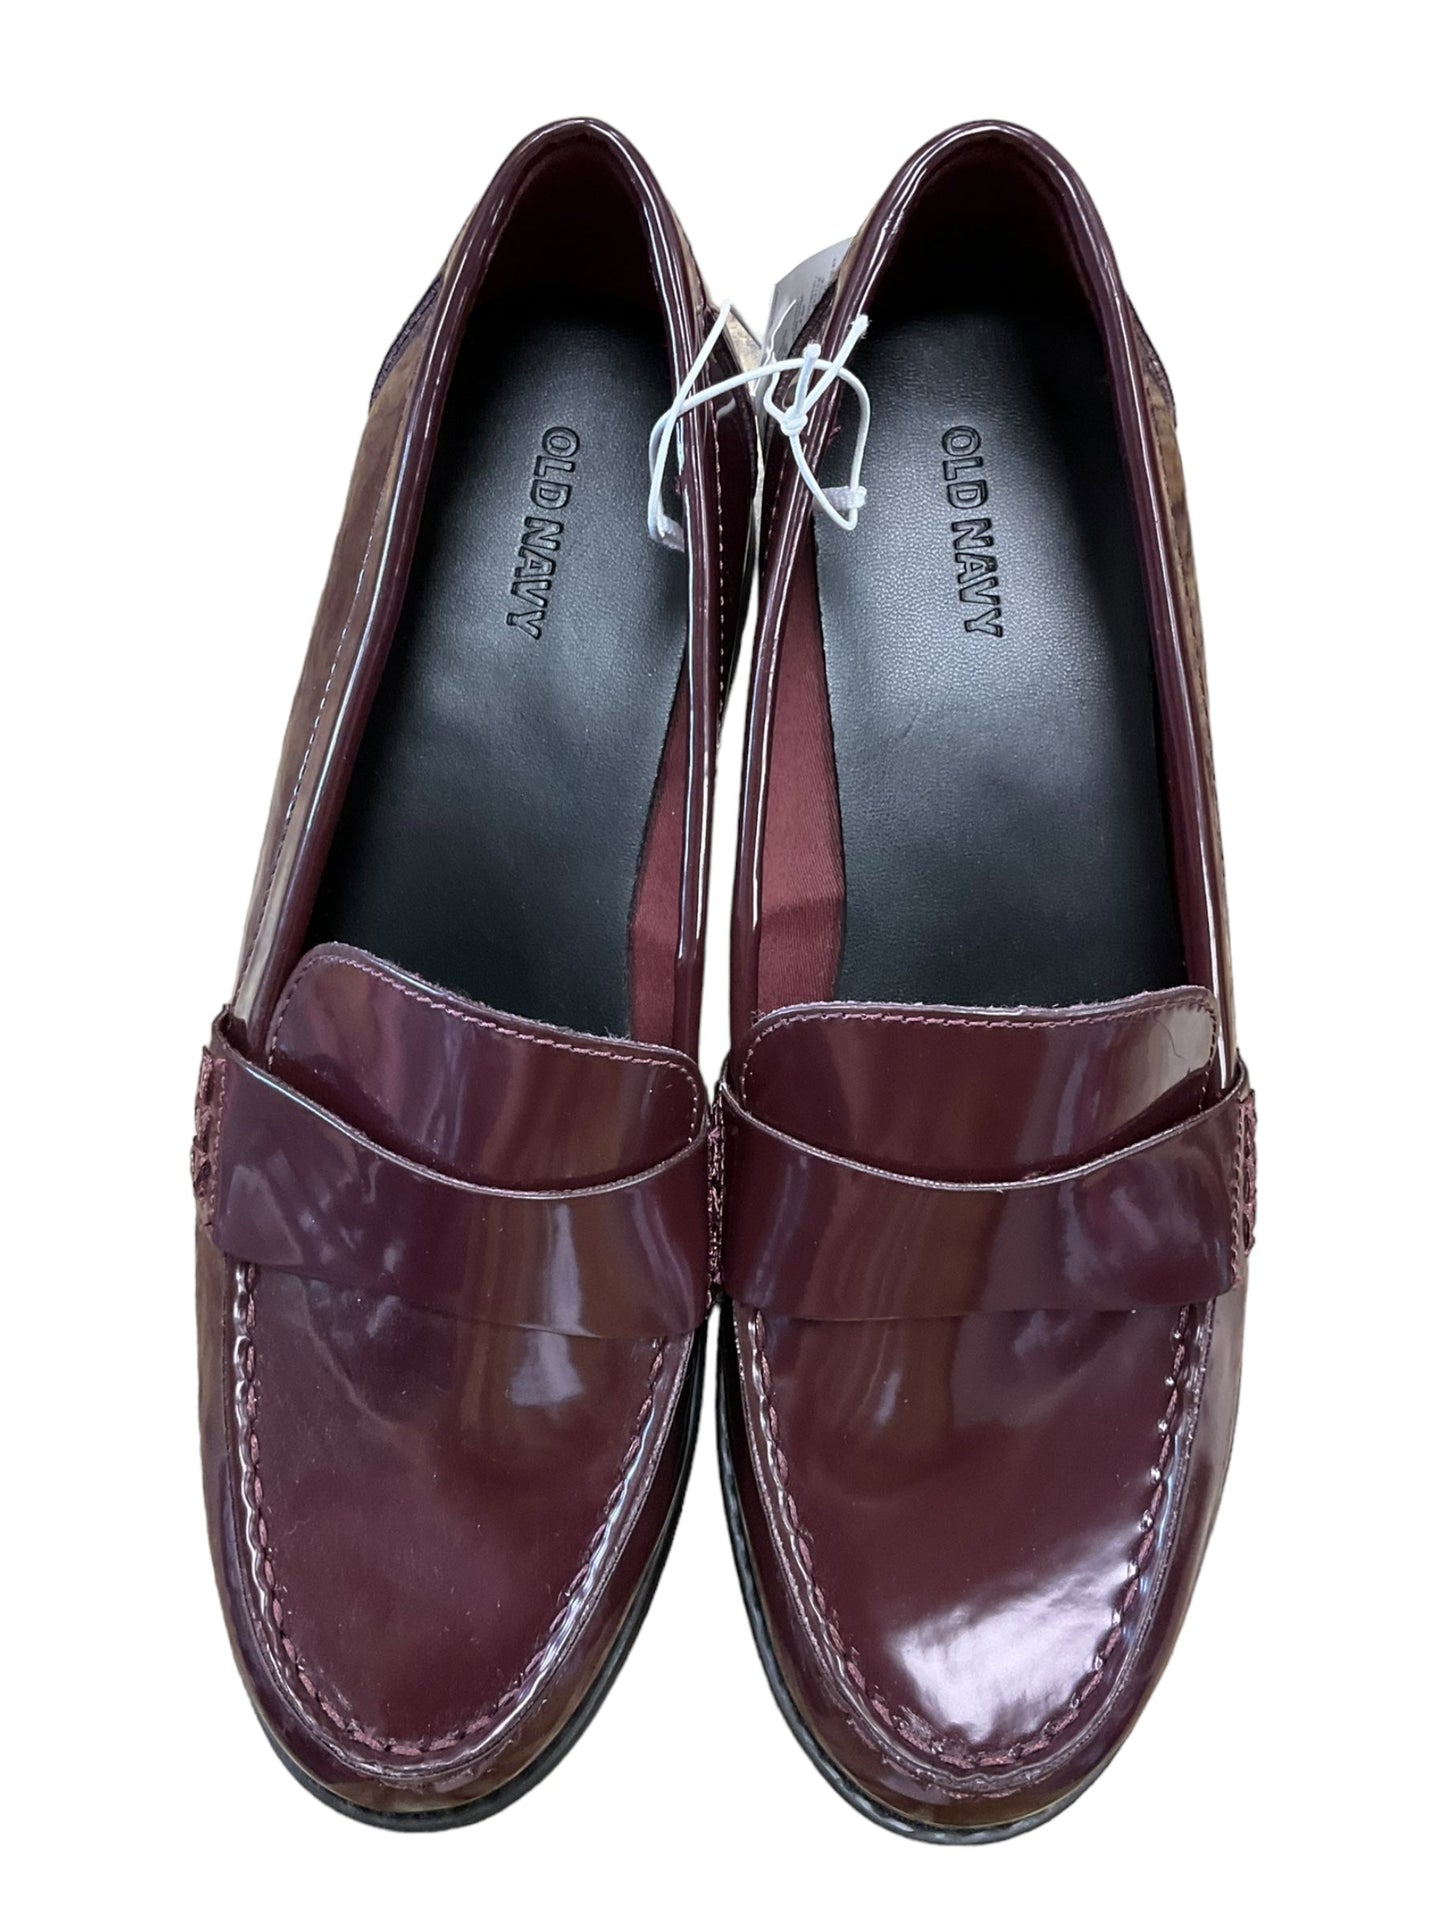 Purple Shoes Flats Old Gringo, Size 9